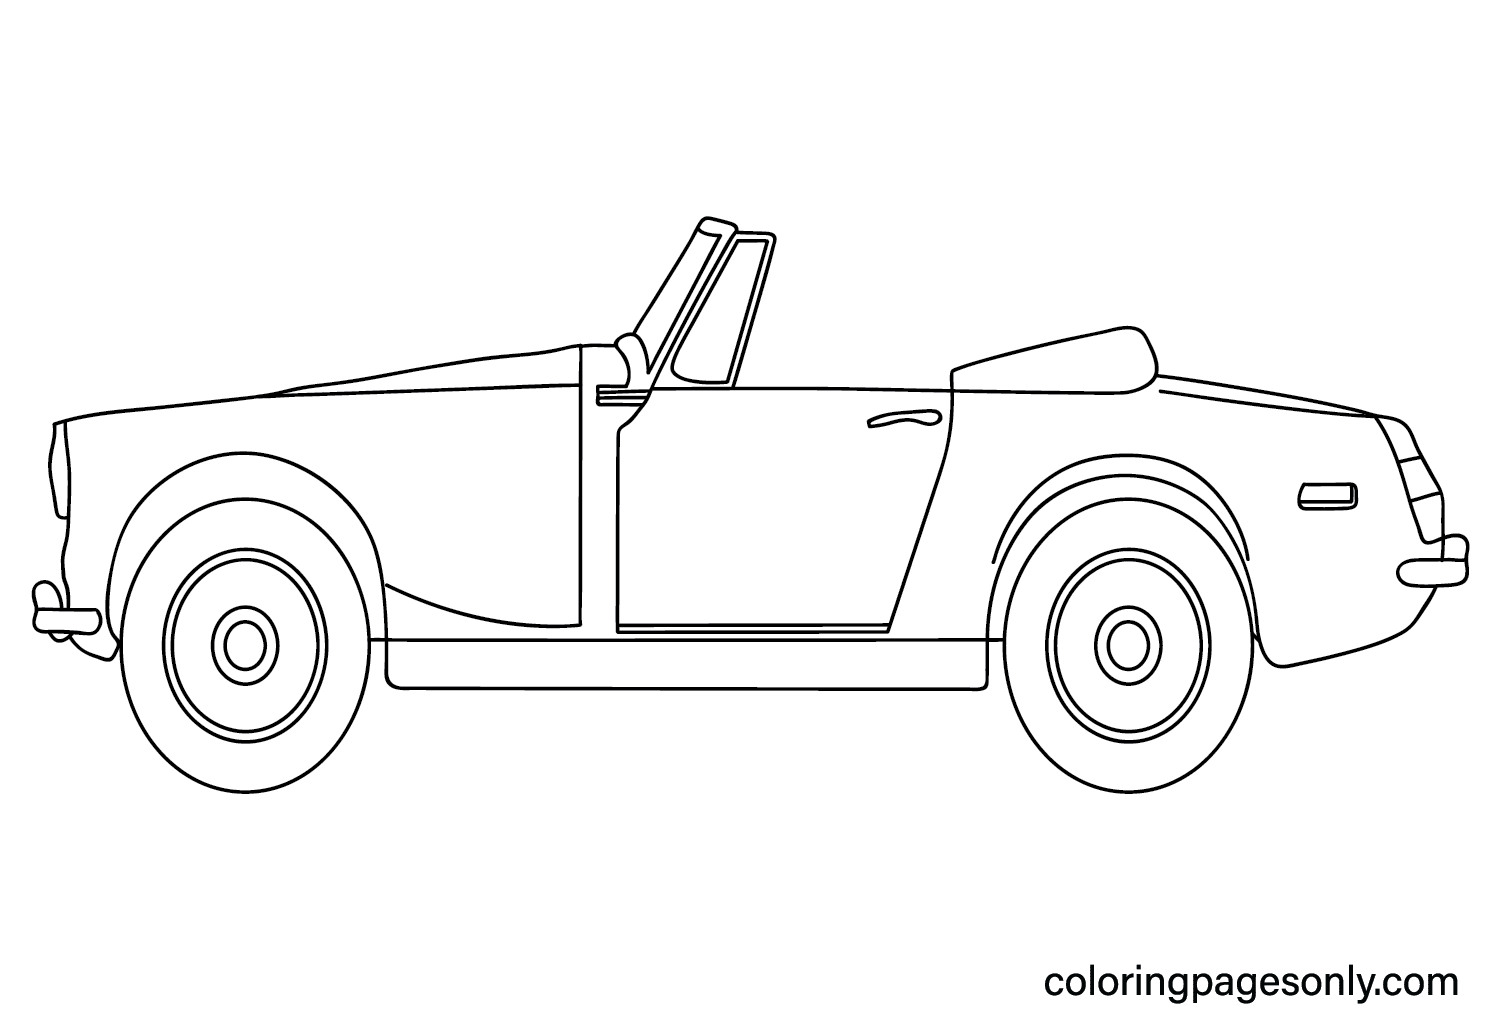 MG Midget Cabriolet Coloring Page